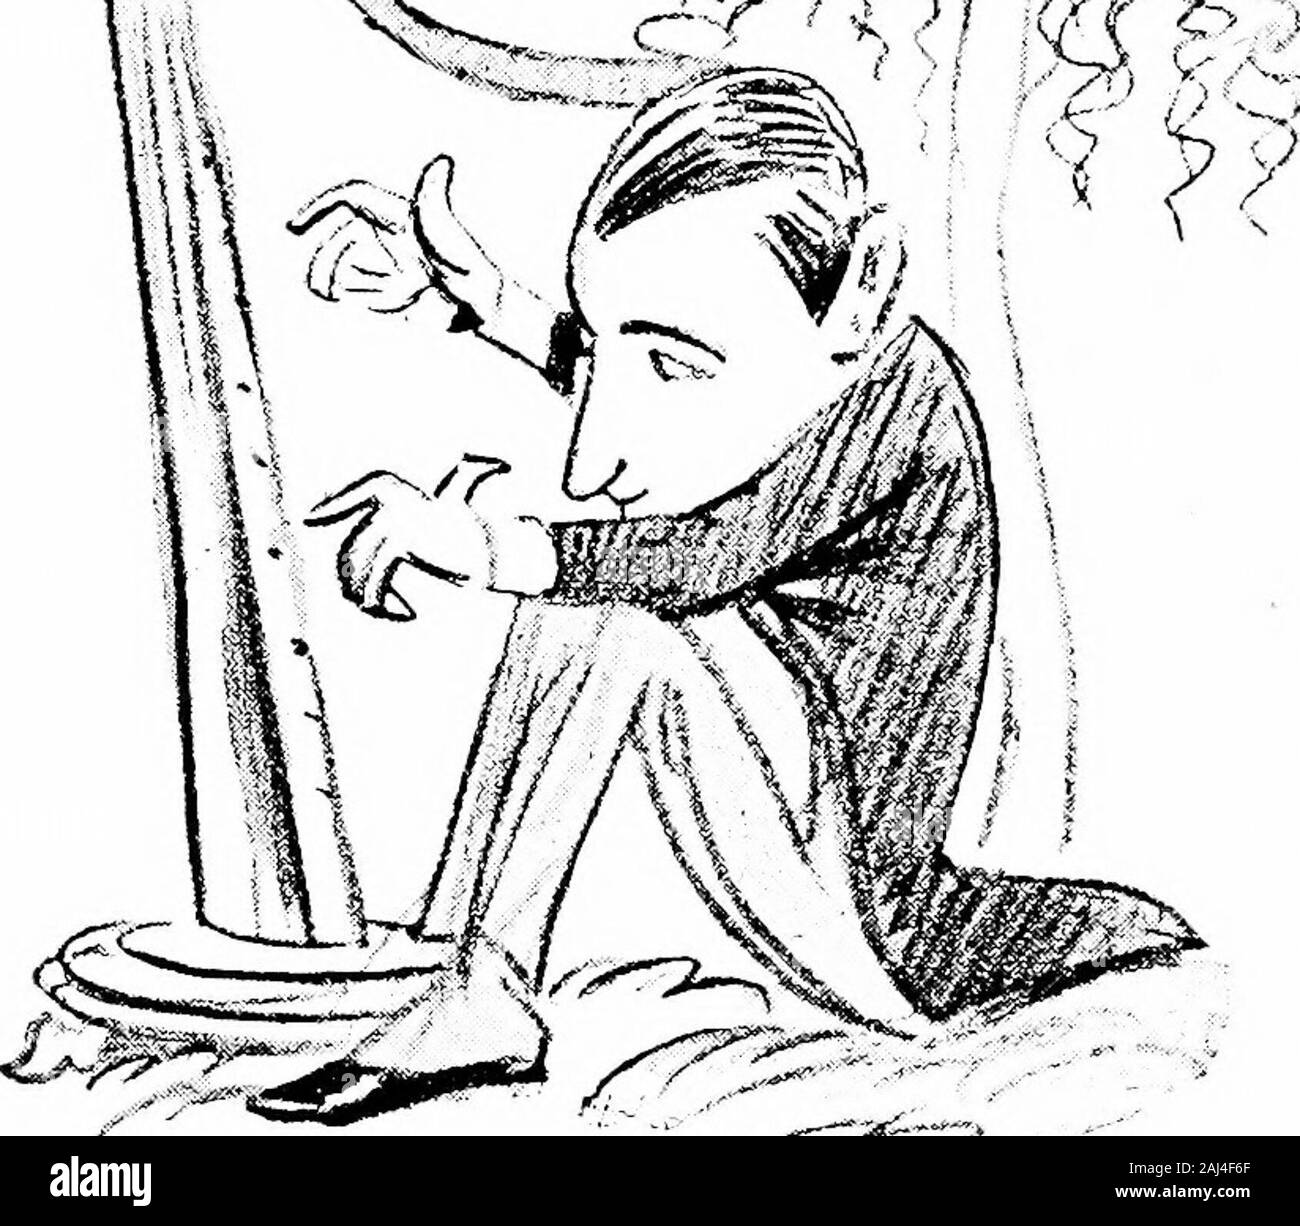 Confessions d'un caricaturiste .^riHVtilVMMl j.t3^^iMnif iaMimi:air1-^ WilBMBMI iwirii j j ..^ Guglielmo Marconi Marconi J'aime mieux pour une treePlaying seeBeneath Macaroni que Nocturne en SharpBy F Chopin, sur une harpe sans fil. 22 HAtenMiMWSftdfGtoc ^^^-^^m... -V^^- George Bernard Shaw Le nom même de Bernard Shaw me remplit de joie mêlée et d'admiration. Mélange de Méphistophélès, Don Quichotte, et Diogène, les diables, la Romance Dons jointe à l'arrogance des cyniques. Encadrée sur plan de Pythagore, un légume Souperman. Ici vous pouvez le voir avec la couronne le plus grand dramaturge de la baie de son époque ;* Observer Banque D'Images